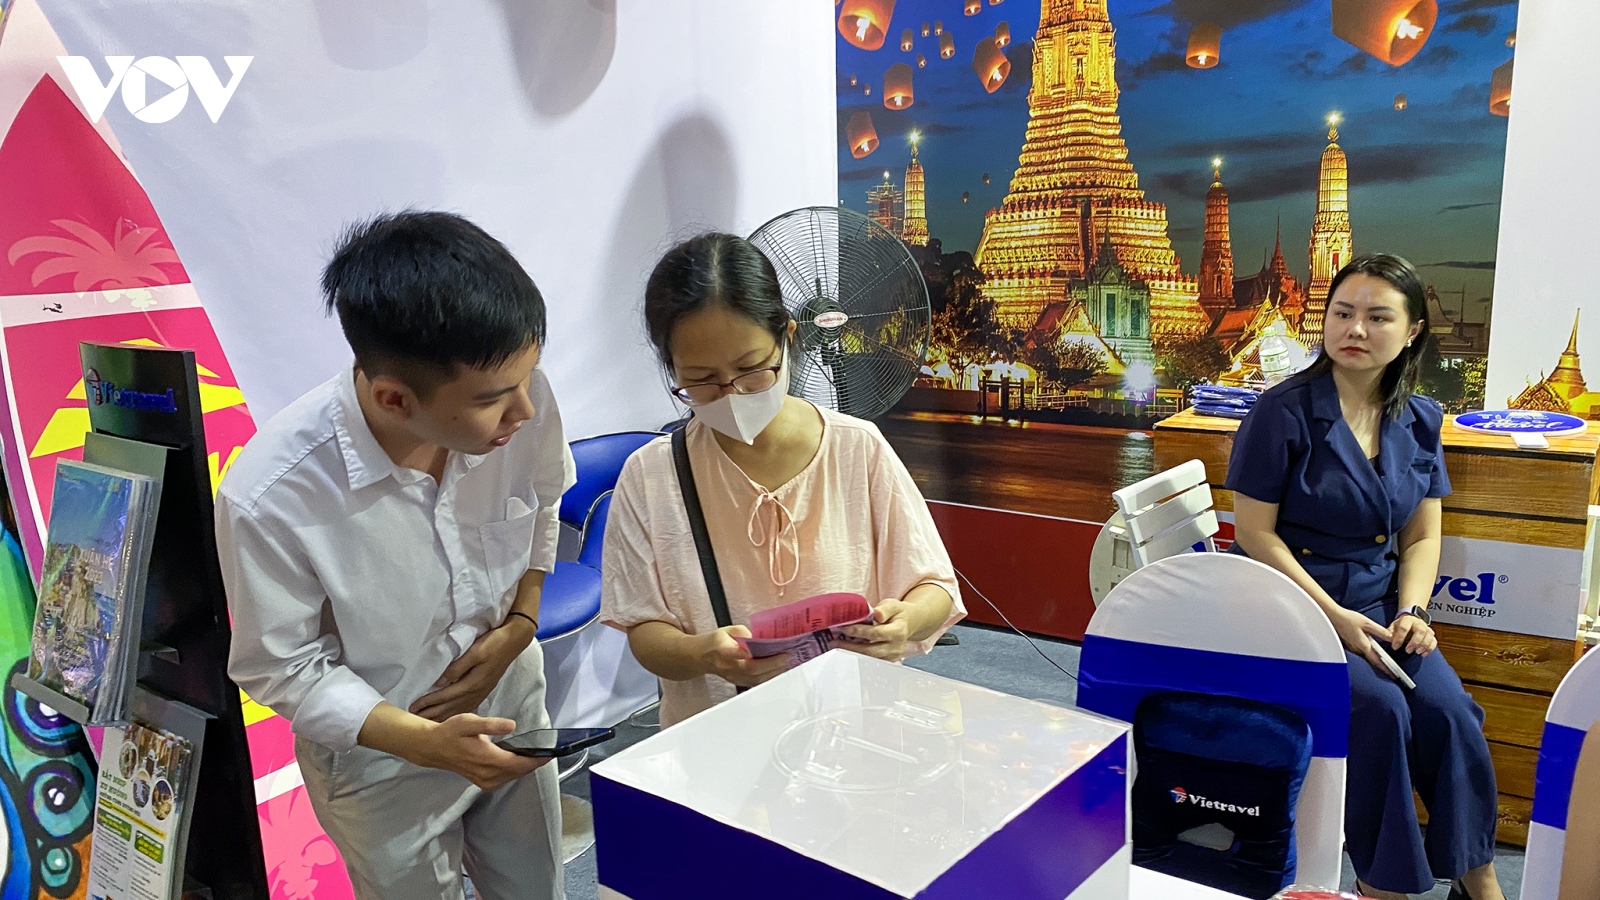 Tìm hiểu bản sắc văn hoá và du lịch Thái Lan tại Hà Nội